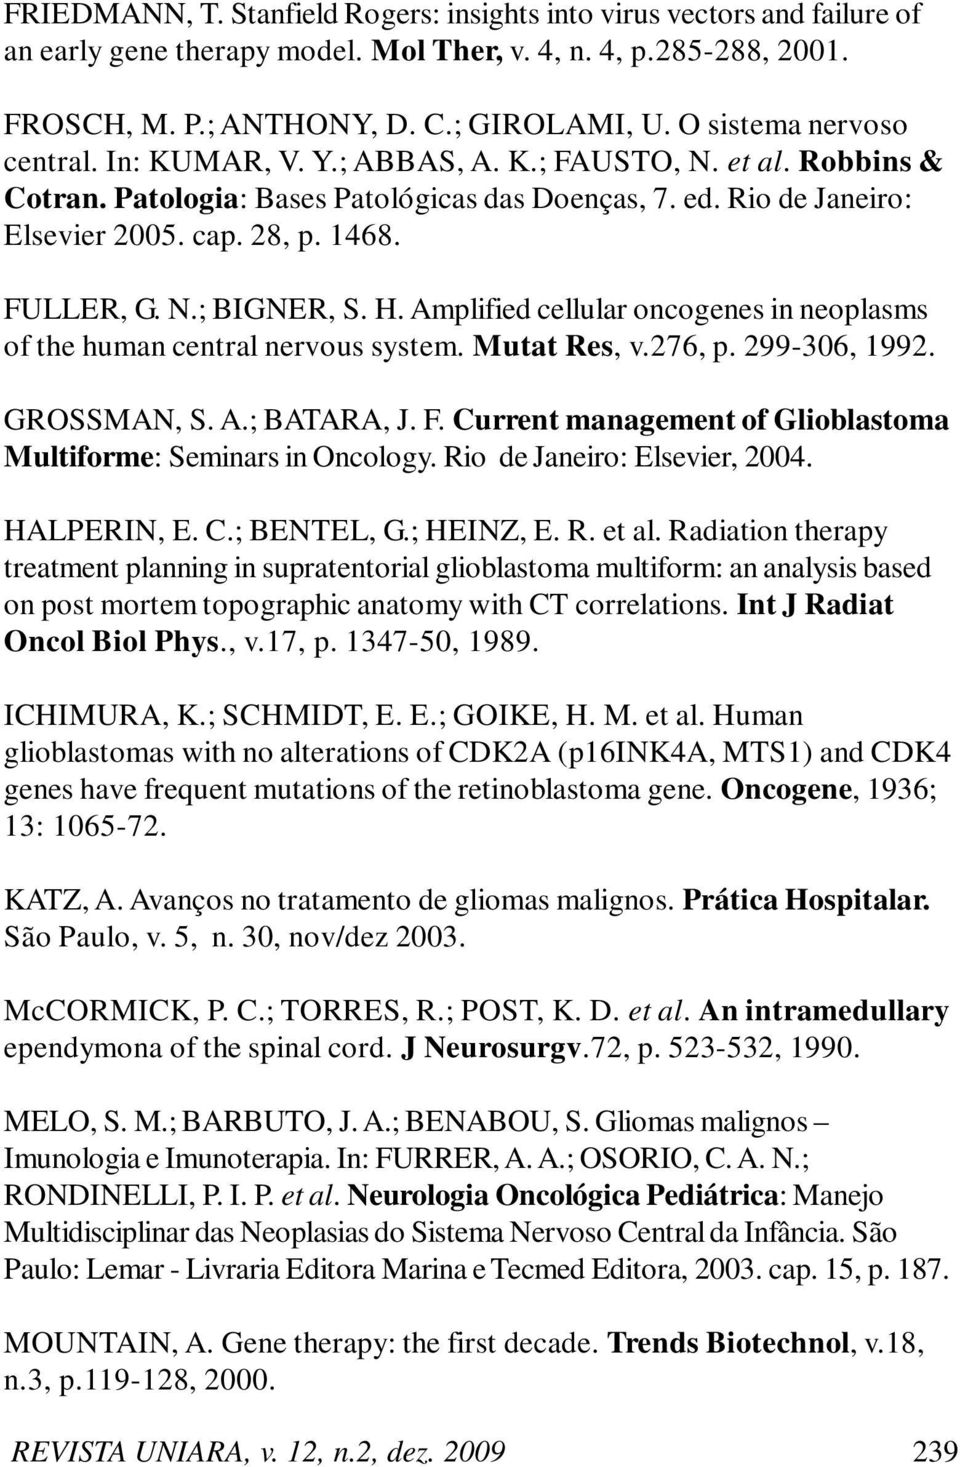 FULLER, G. N.; BIGNER, S. H. Amplified cellular oncogenes in neoplasms of the human central nervous system. Mutat Res, v.276, p. 299-306, 1992. GROSSMAN, S. A.; BATARA, J. F.